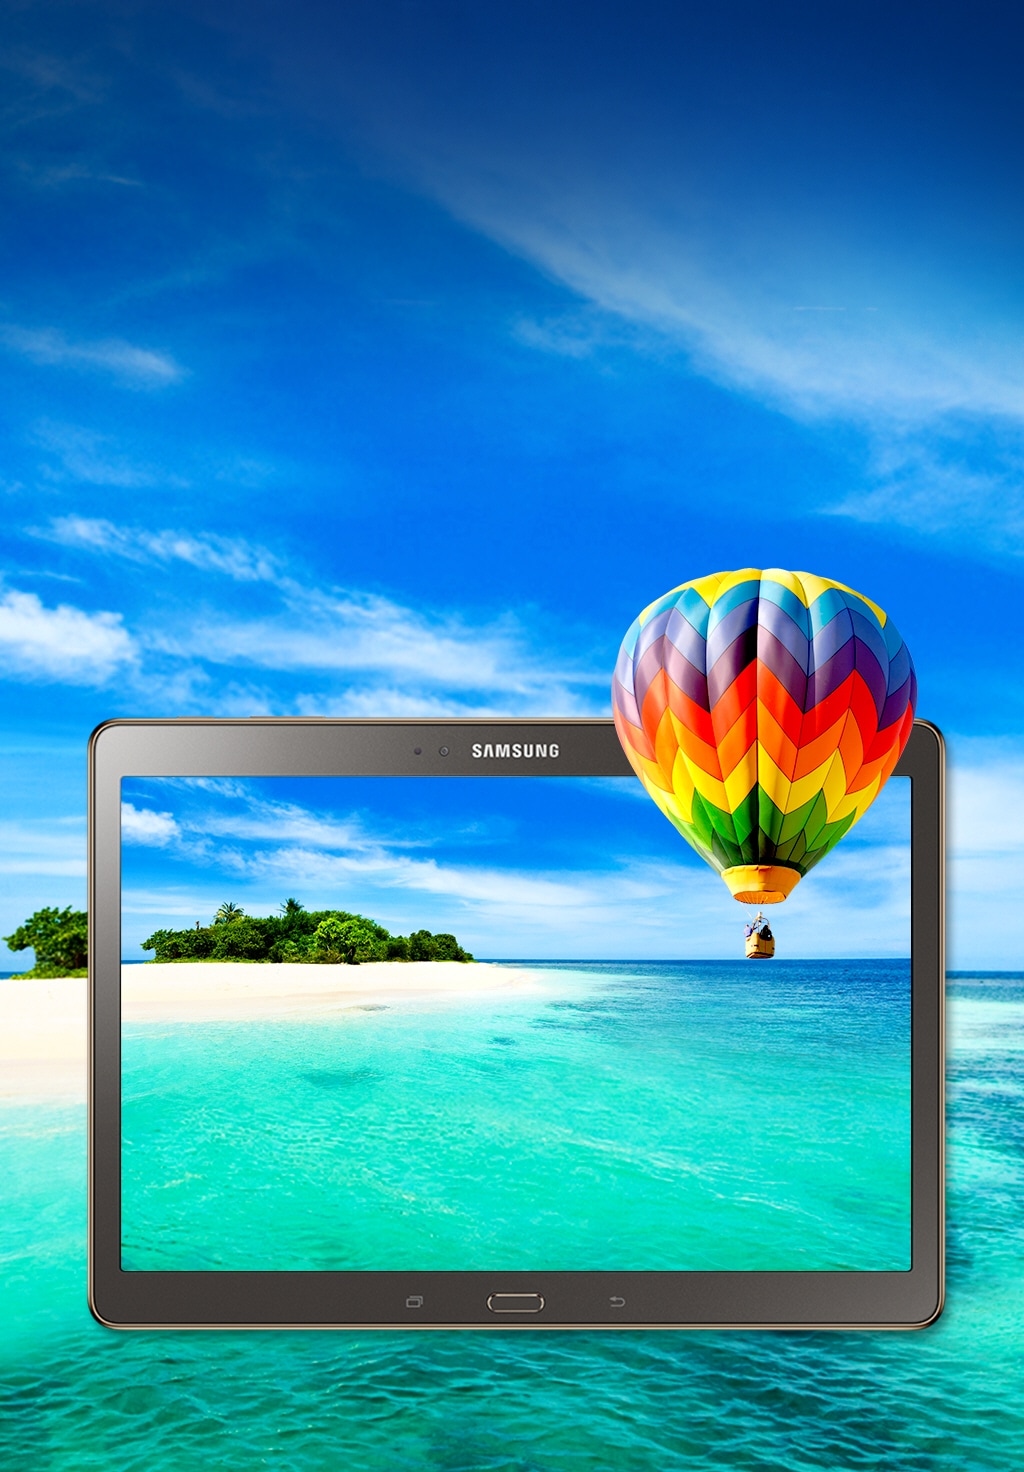 Tablette Samsung Galaxy TAB S 10.5 SM-T805 - 4G tout opérateur - Bon état